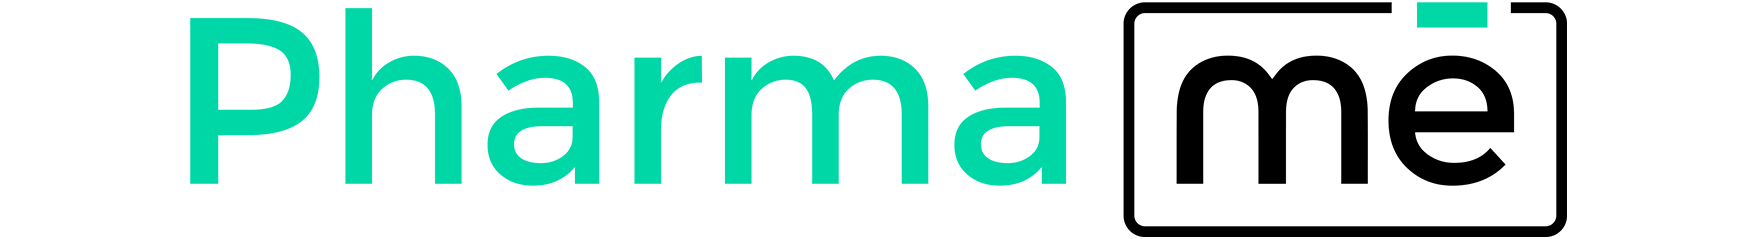 Logotipo PharmaMe, ERP industria química y farmacéutica